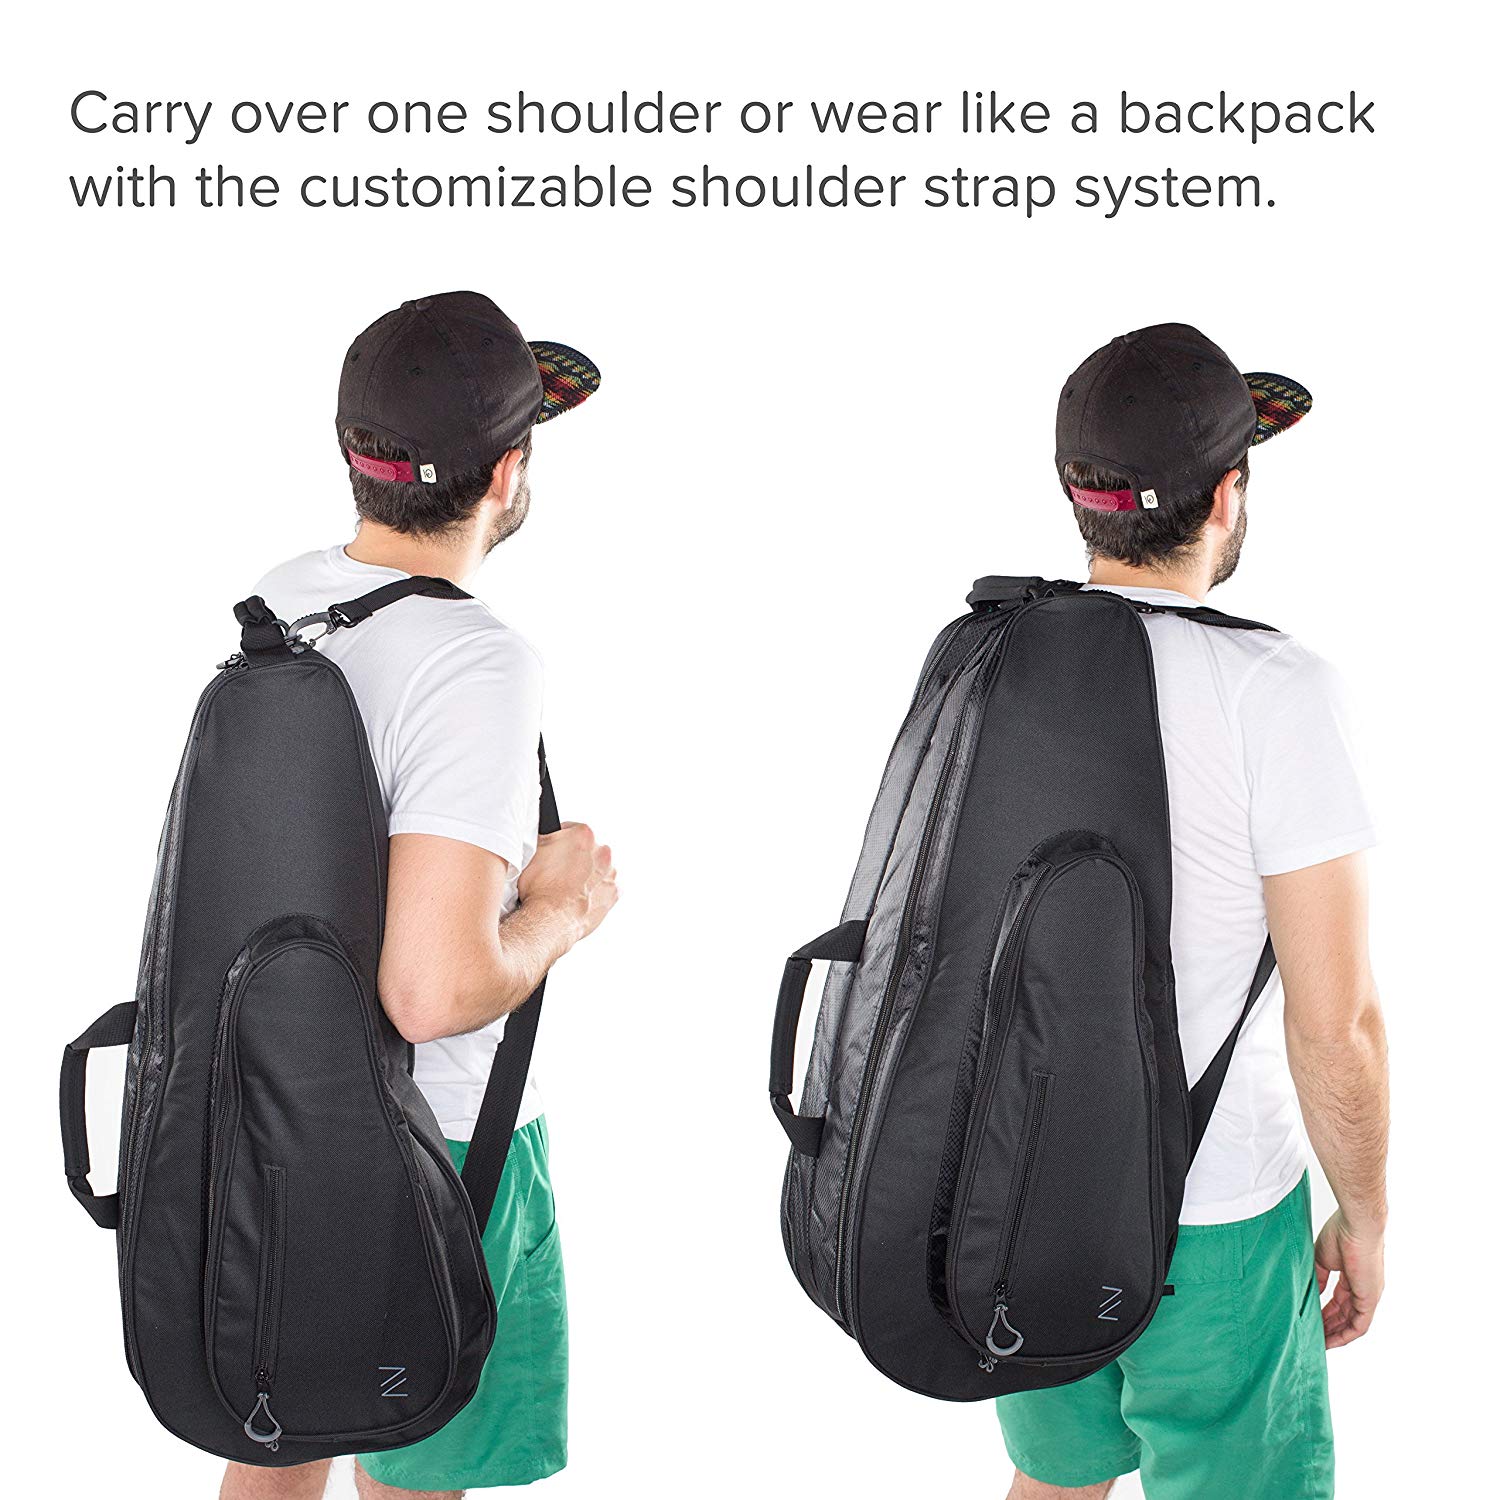 Carrying a tennis racket bag - Backpack or Shoulder Strap